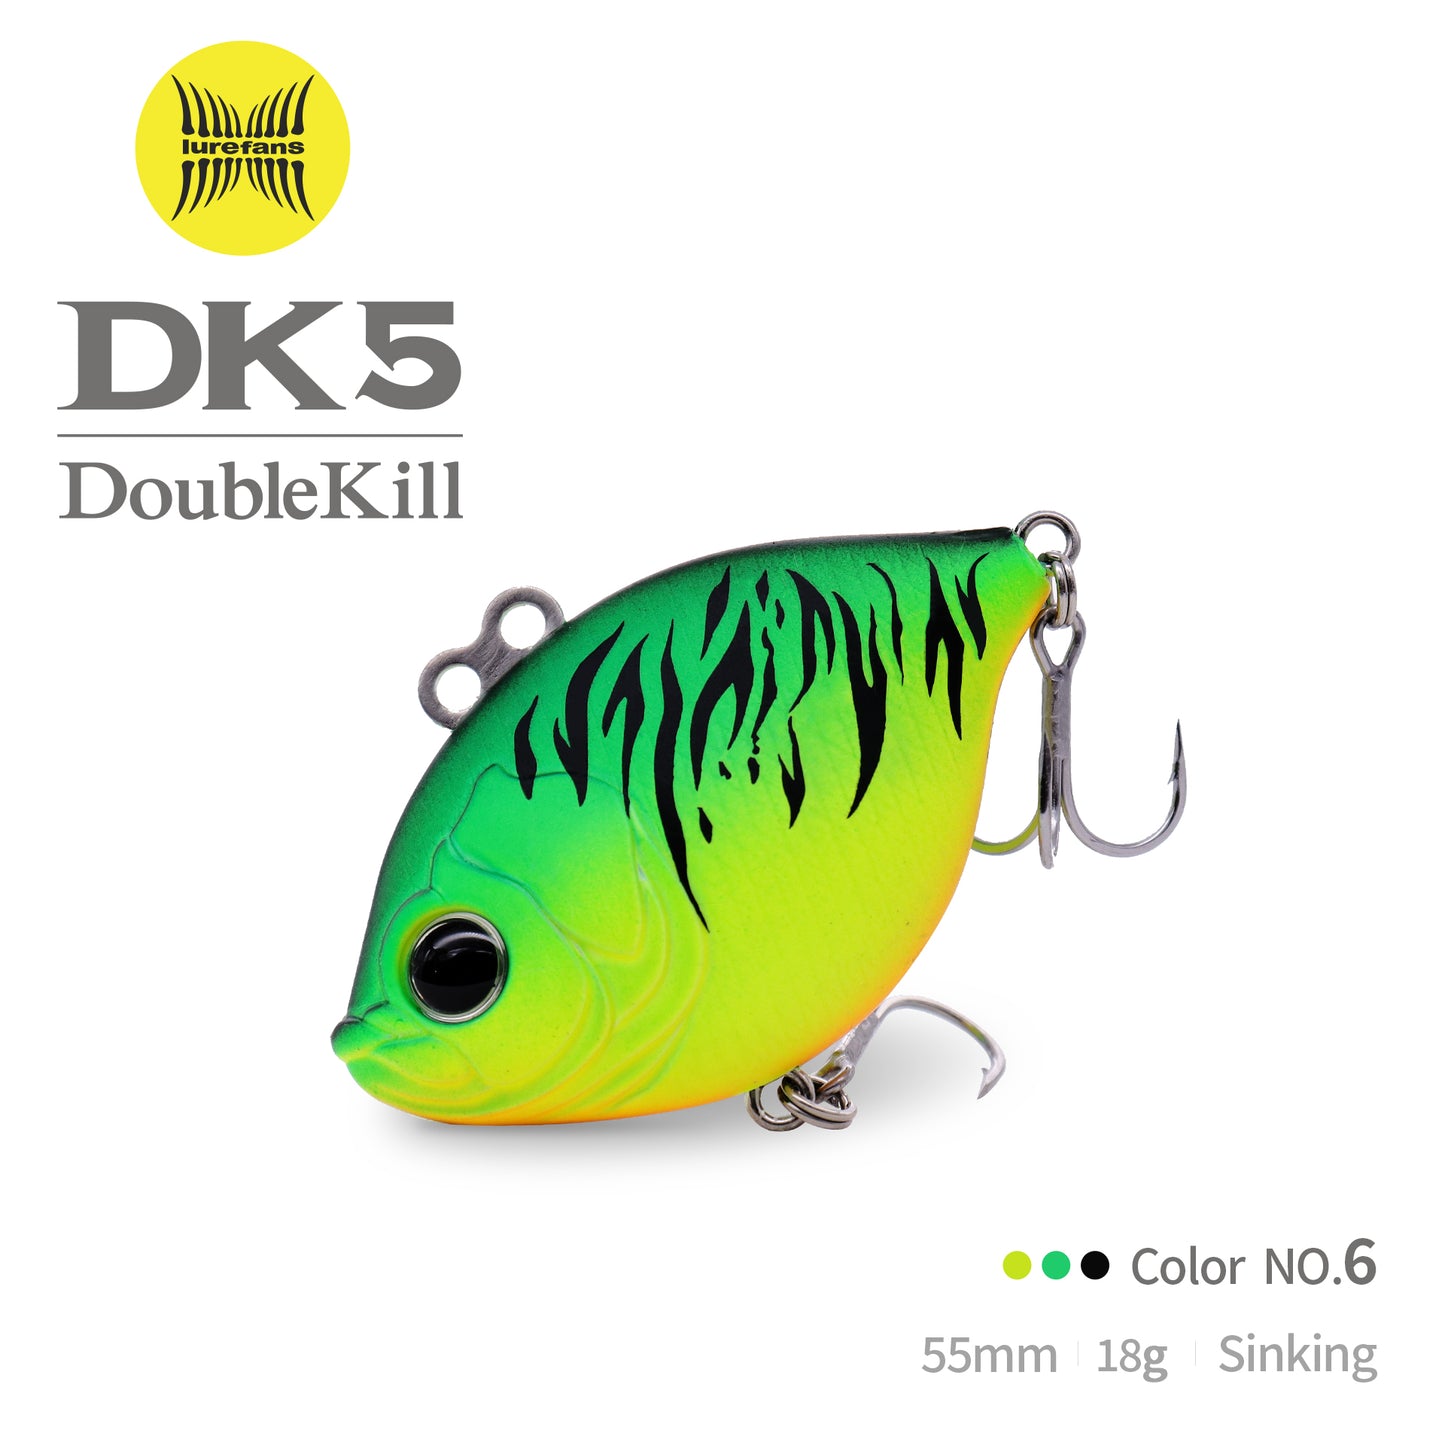 DK5